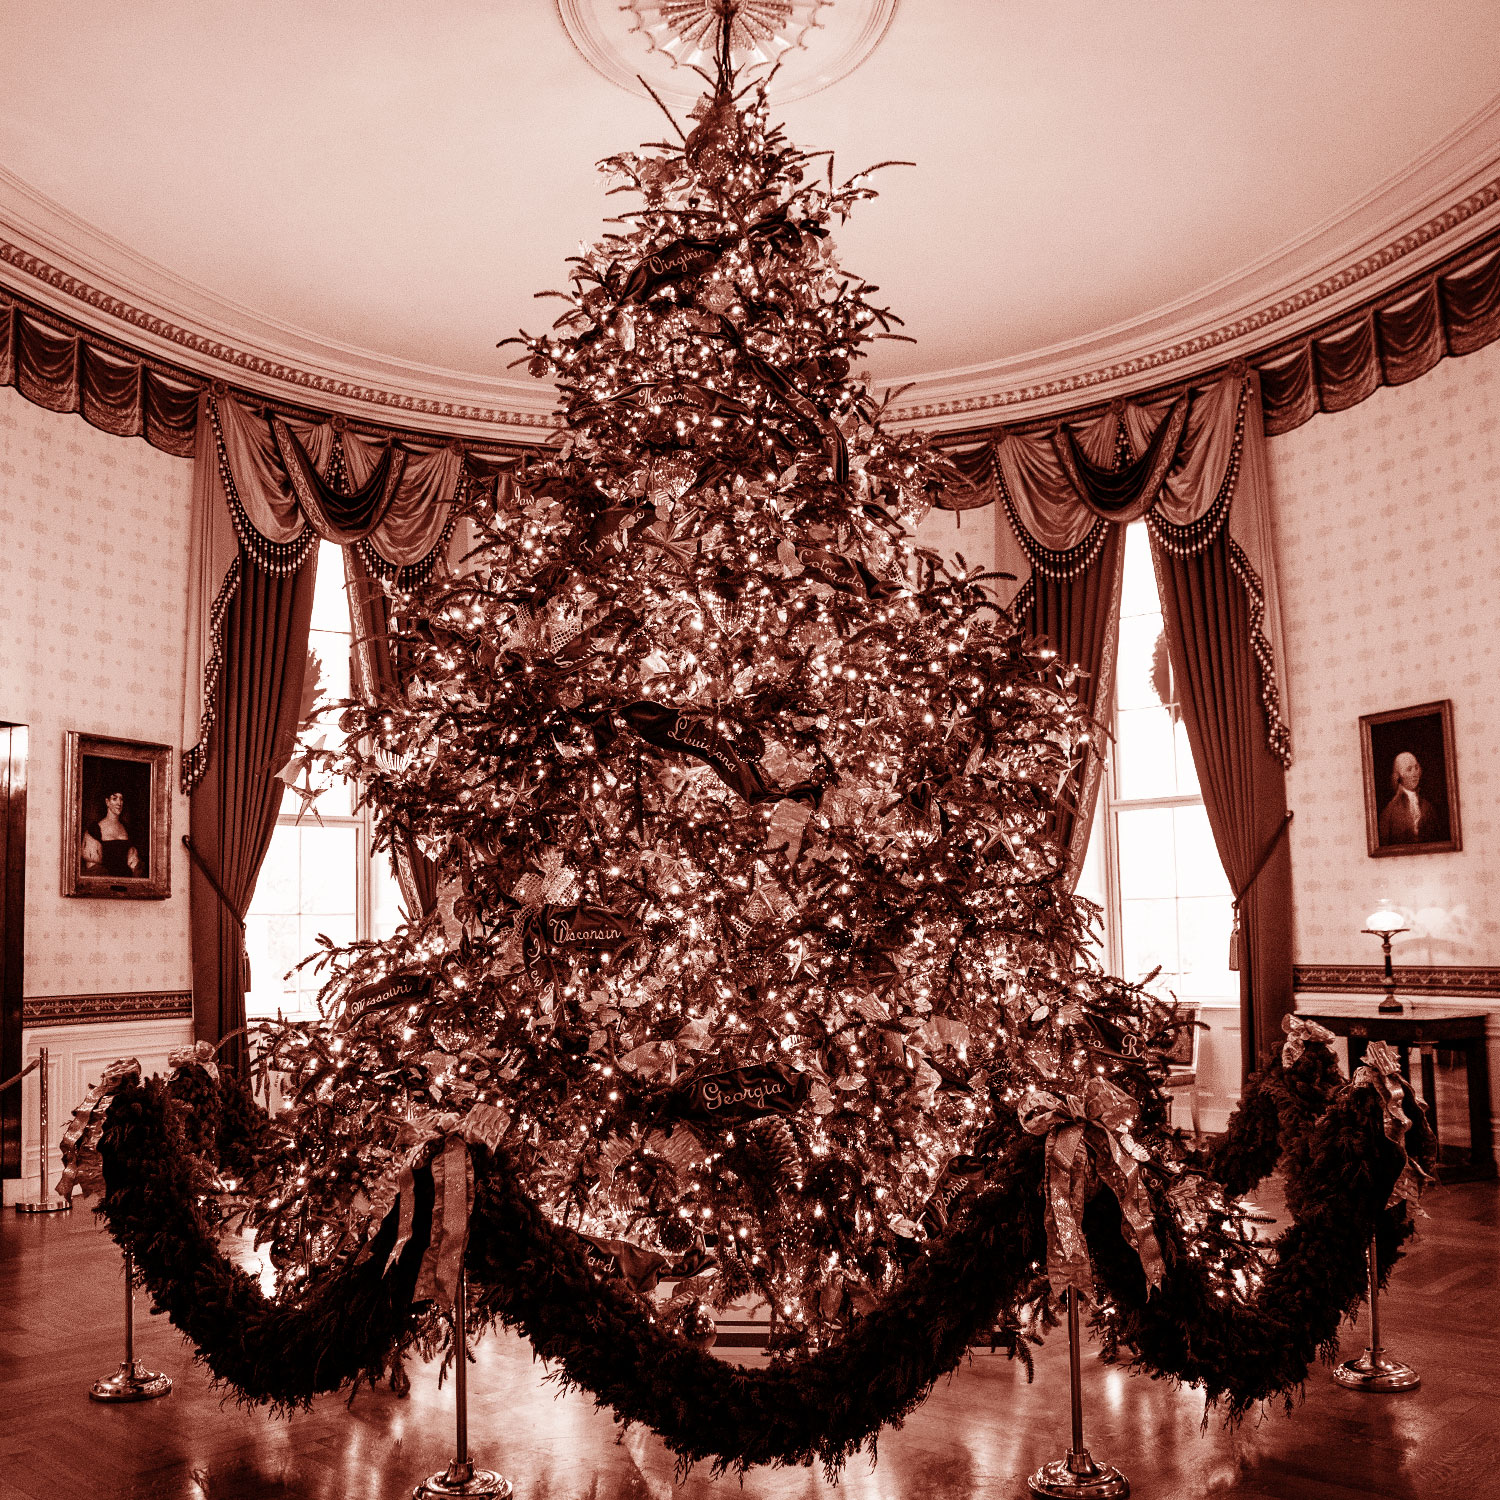 The National Christmas Tree